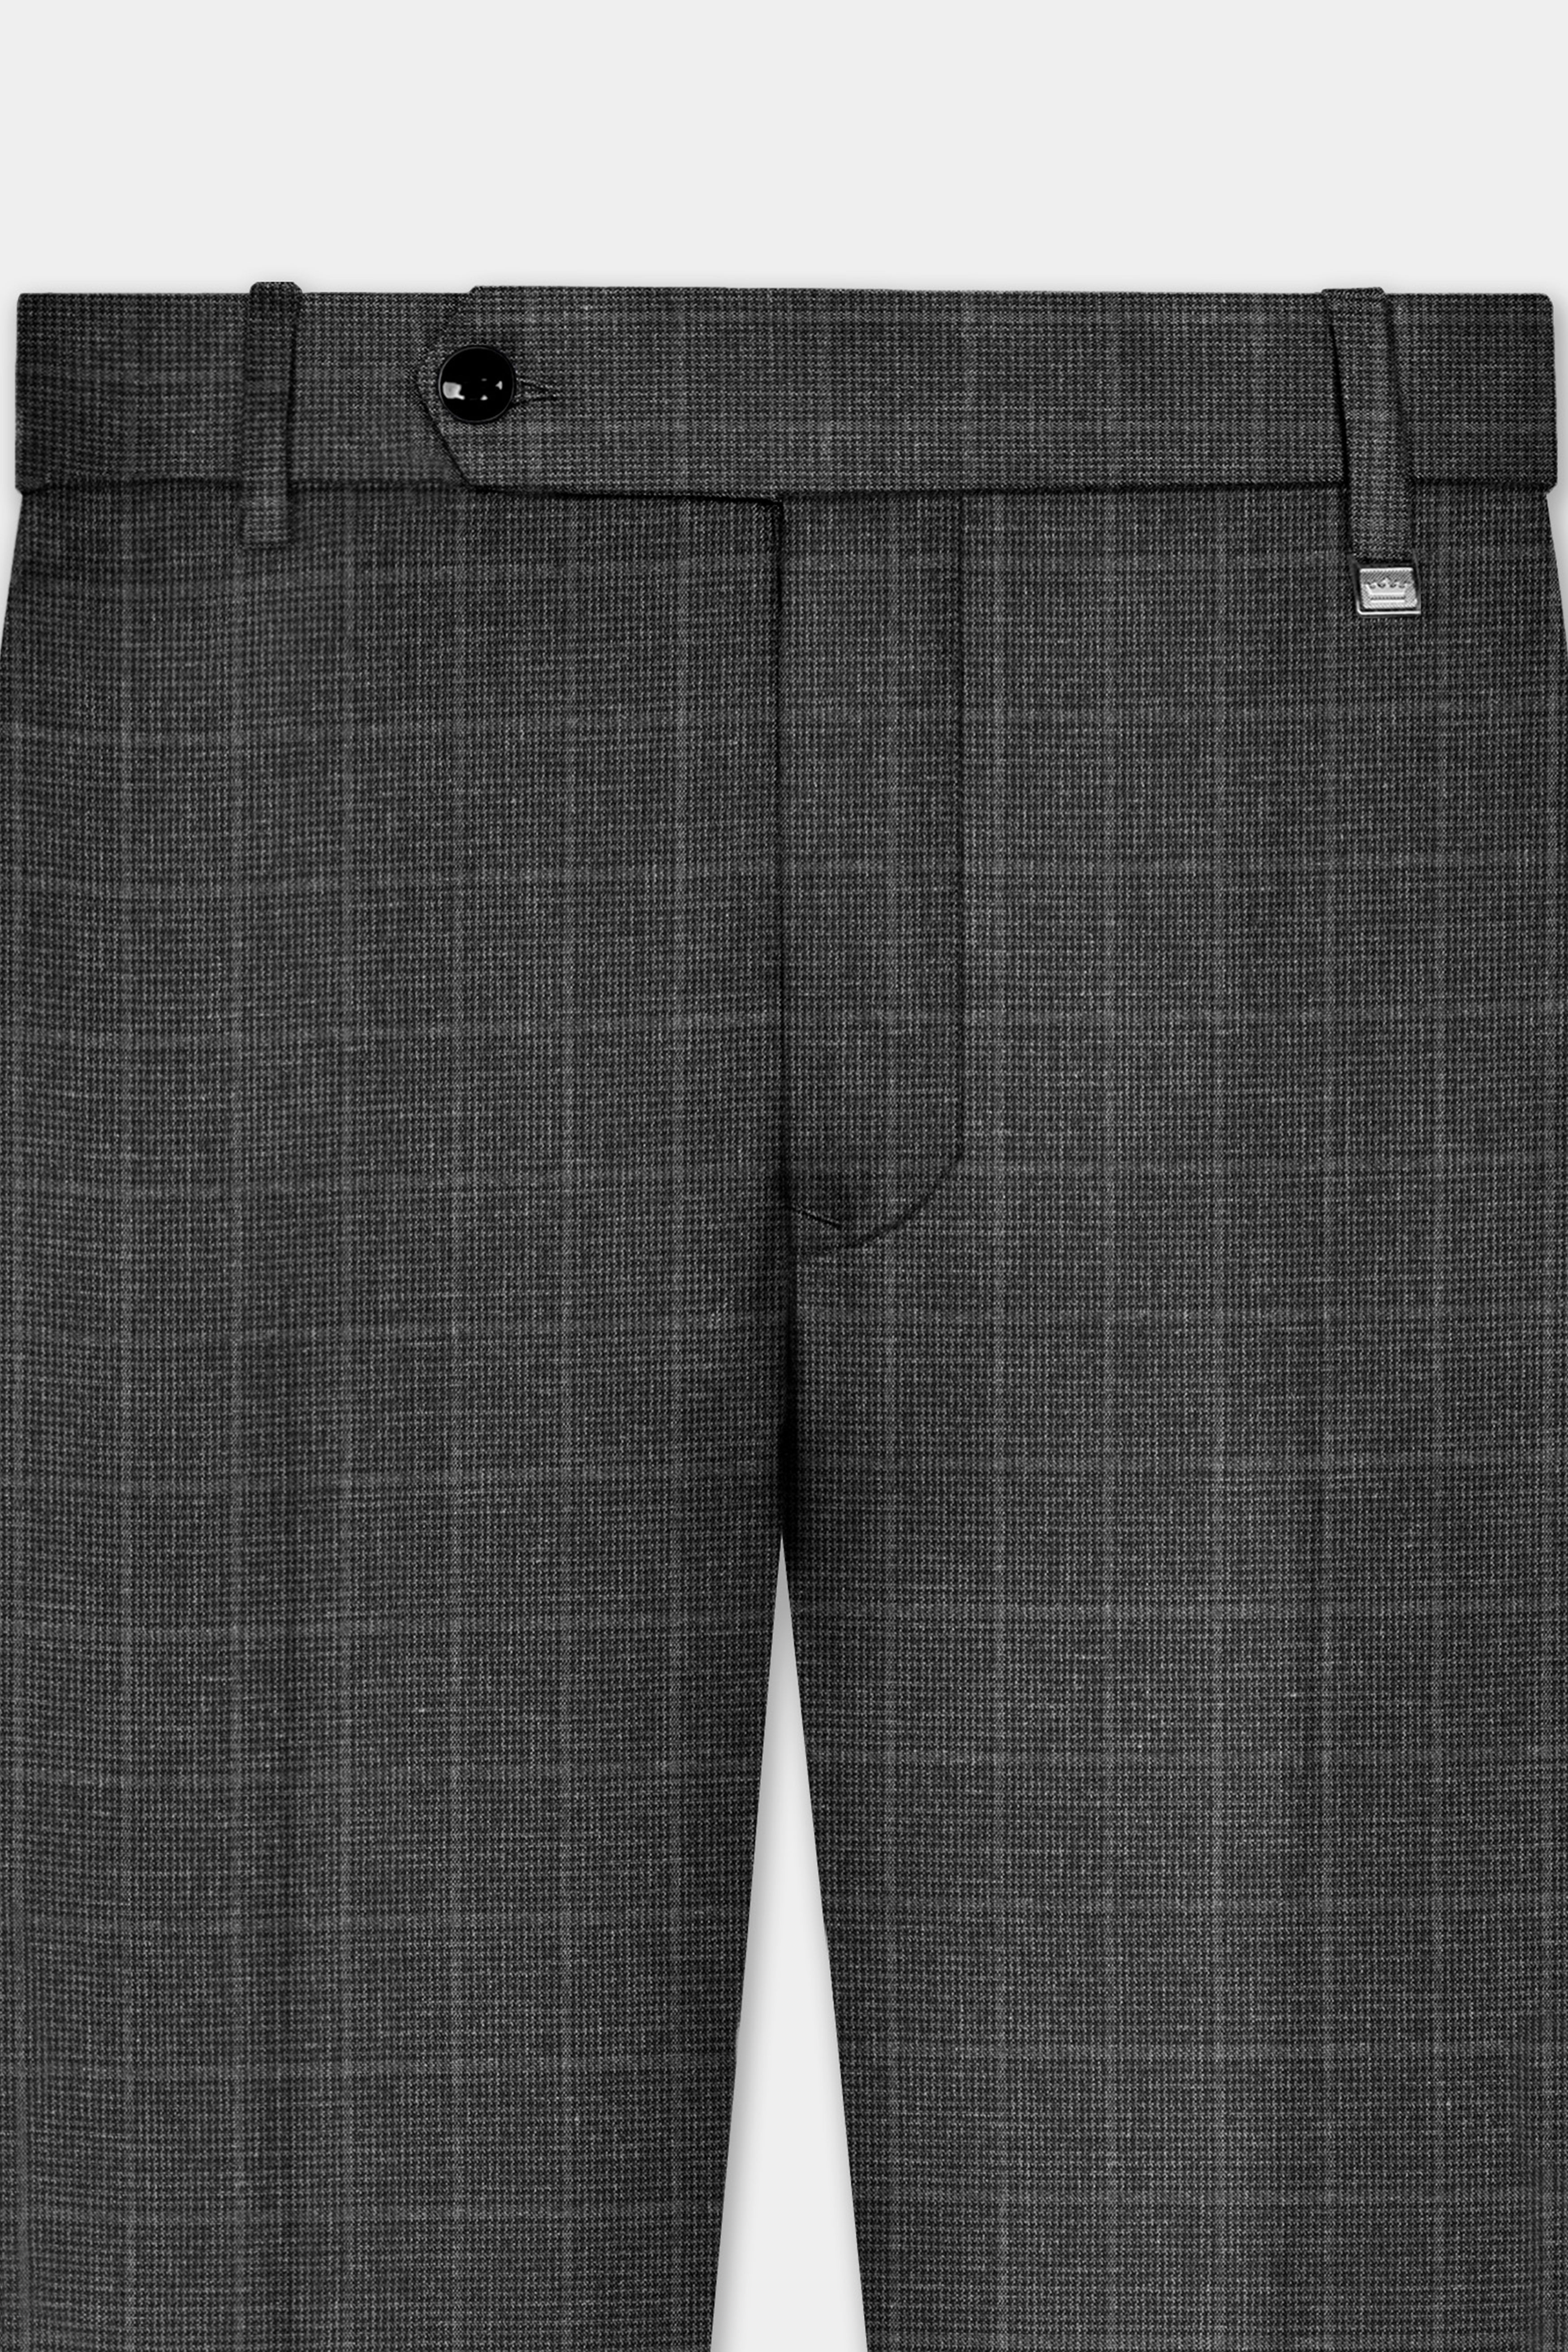 Iridium Gray Plaid Wool Blend Single Breasted Suit